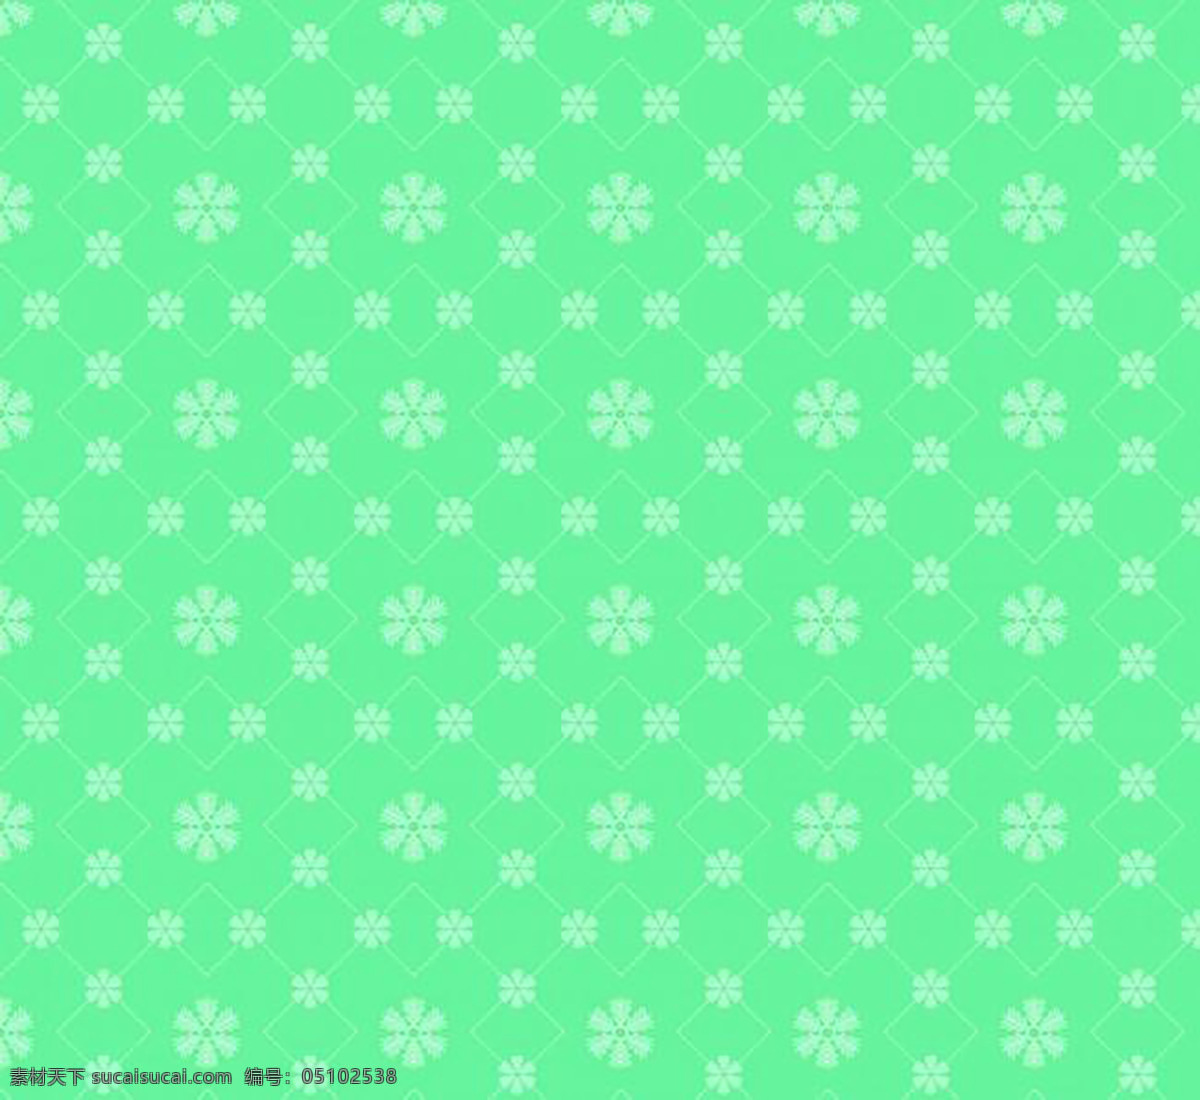 冬季 绿色 雪花 背景 图 白色 草木绿 浅白色 浅绿色 深绿色